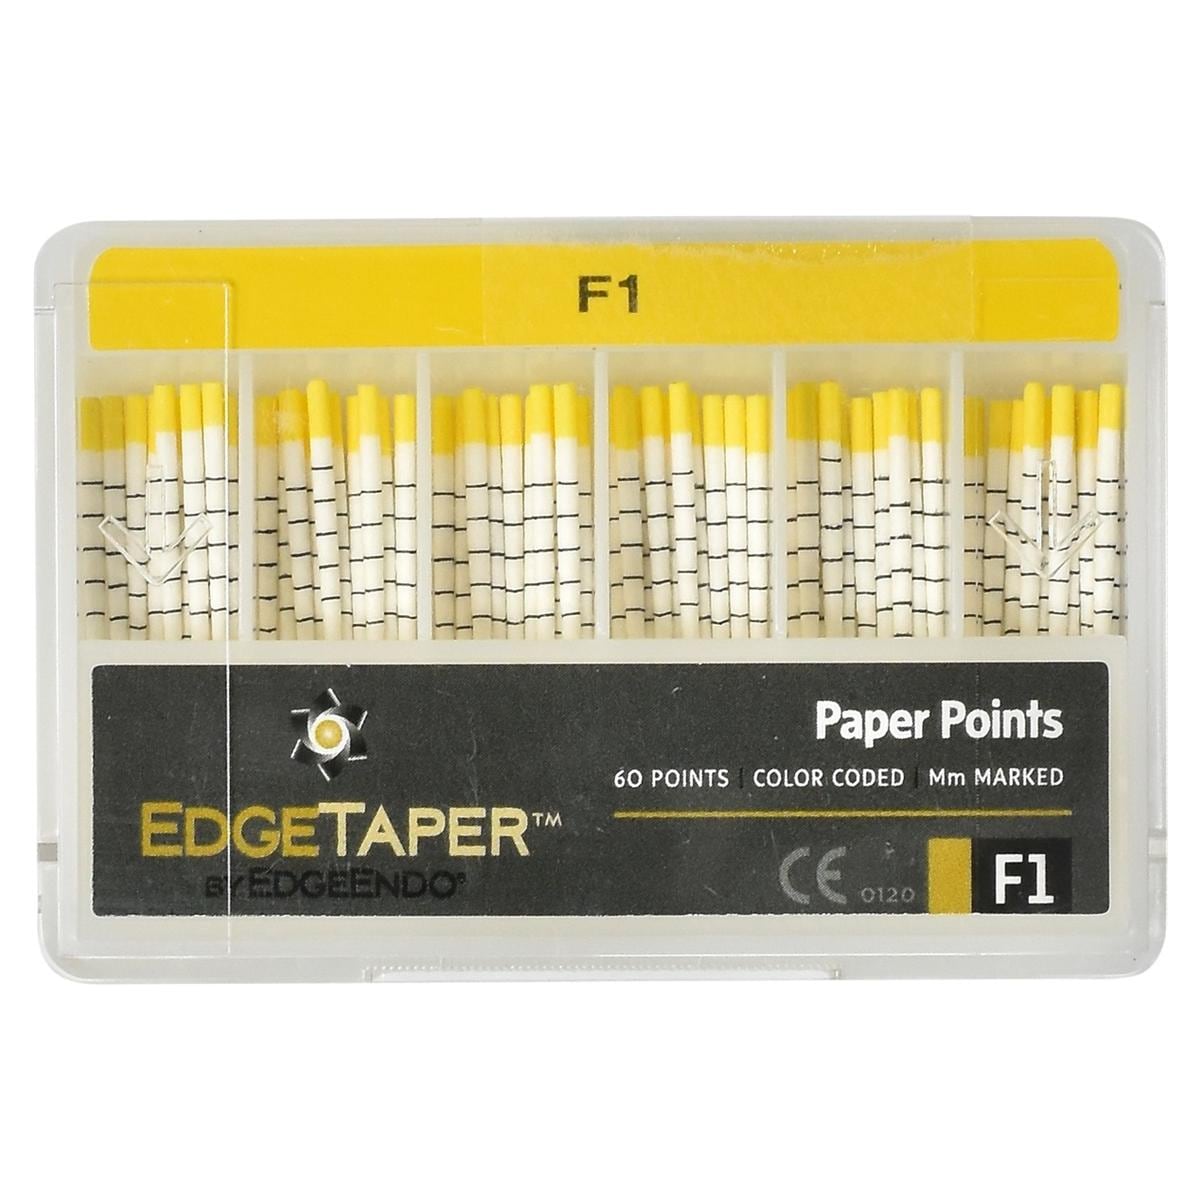 EdgeTaper Paper Point - F1